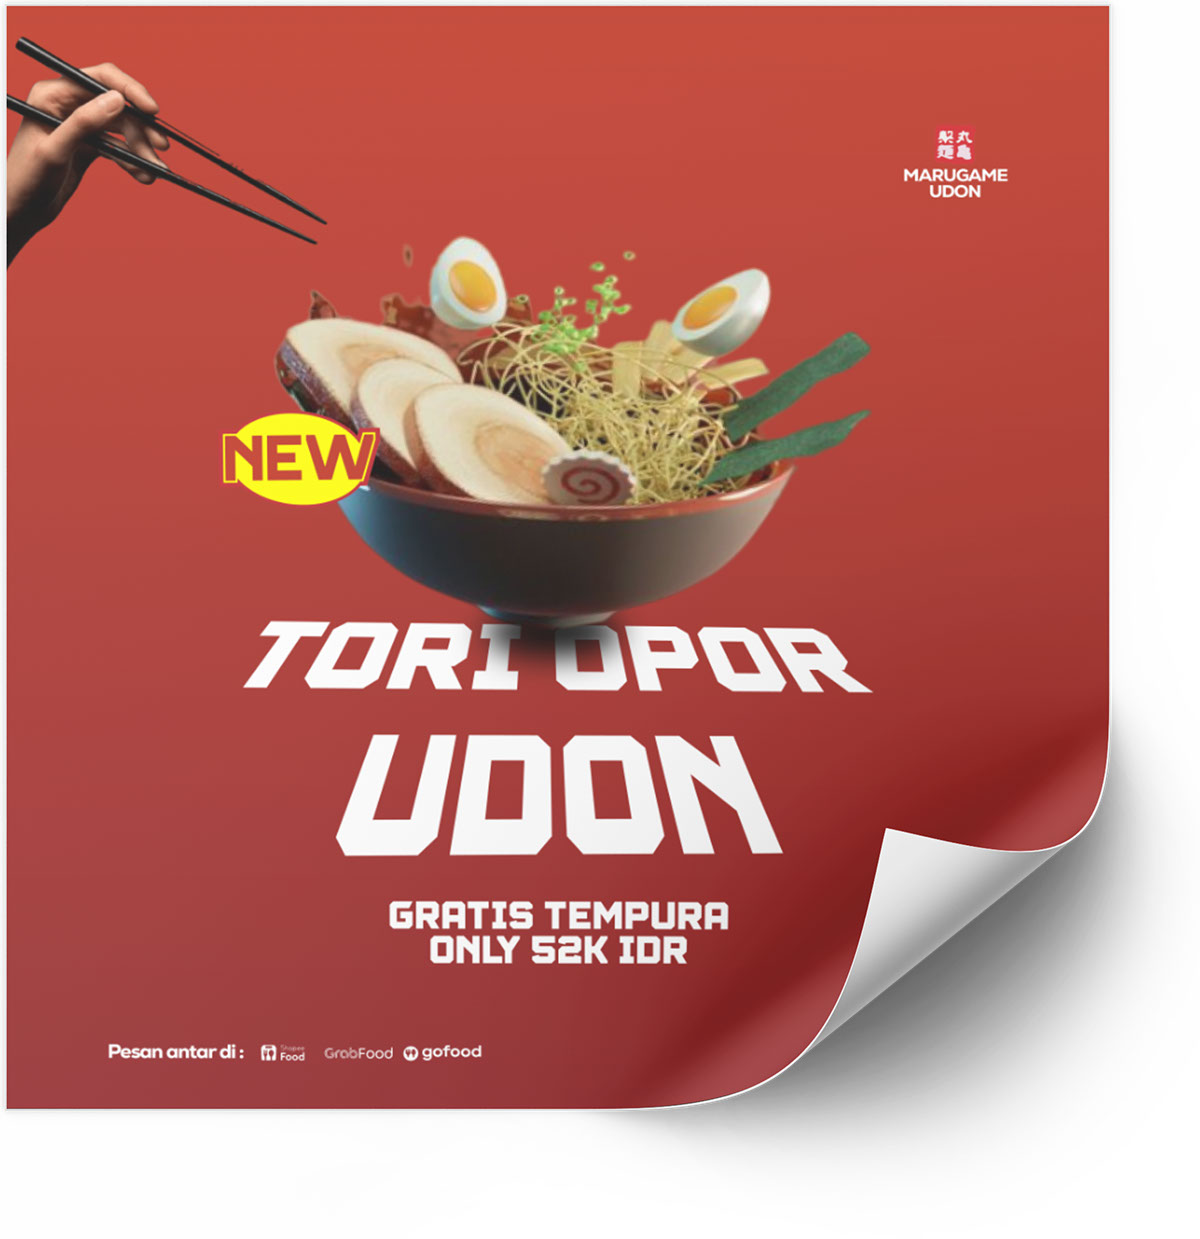 ADS for marugame udon rendition image